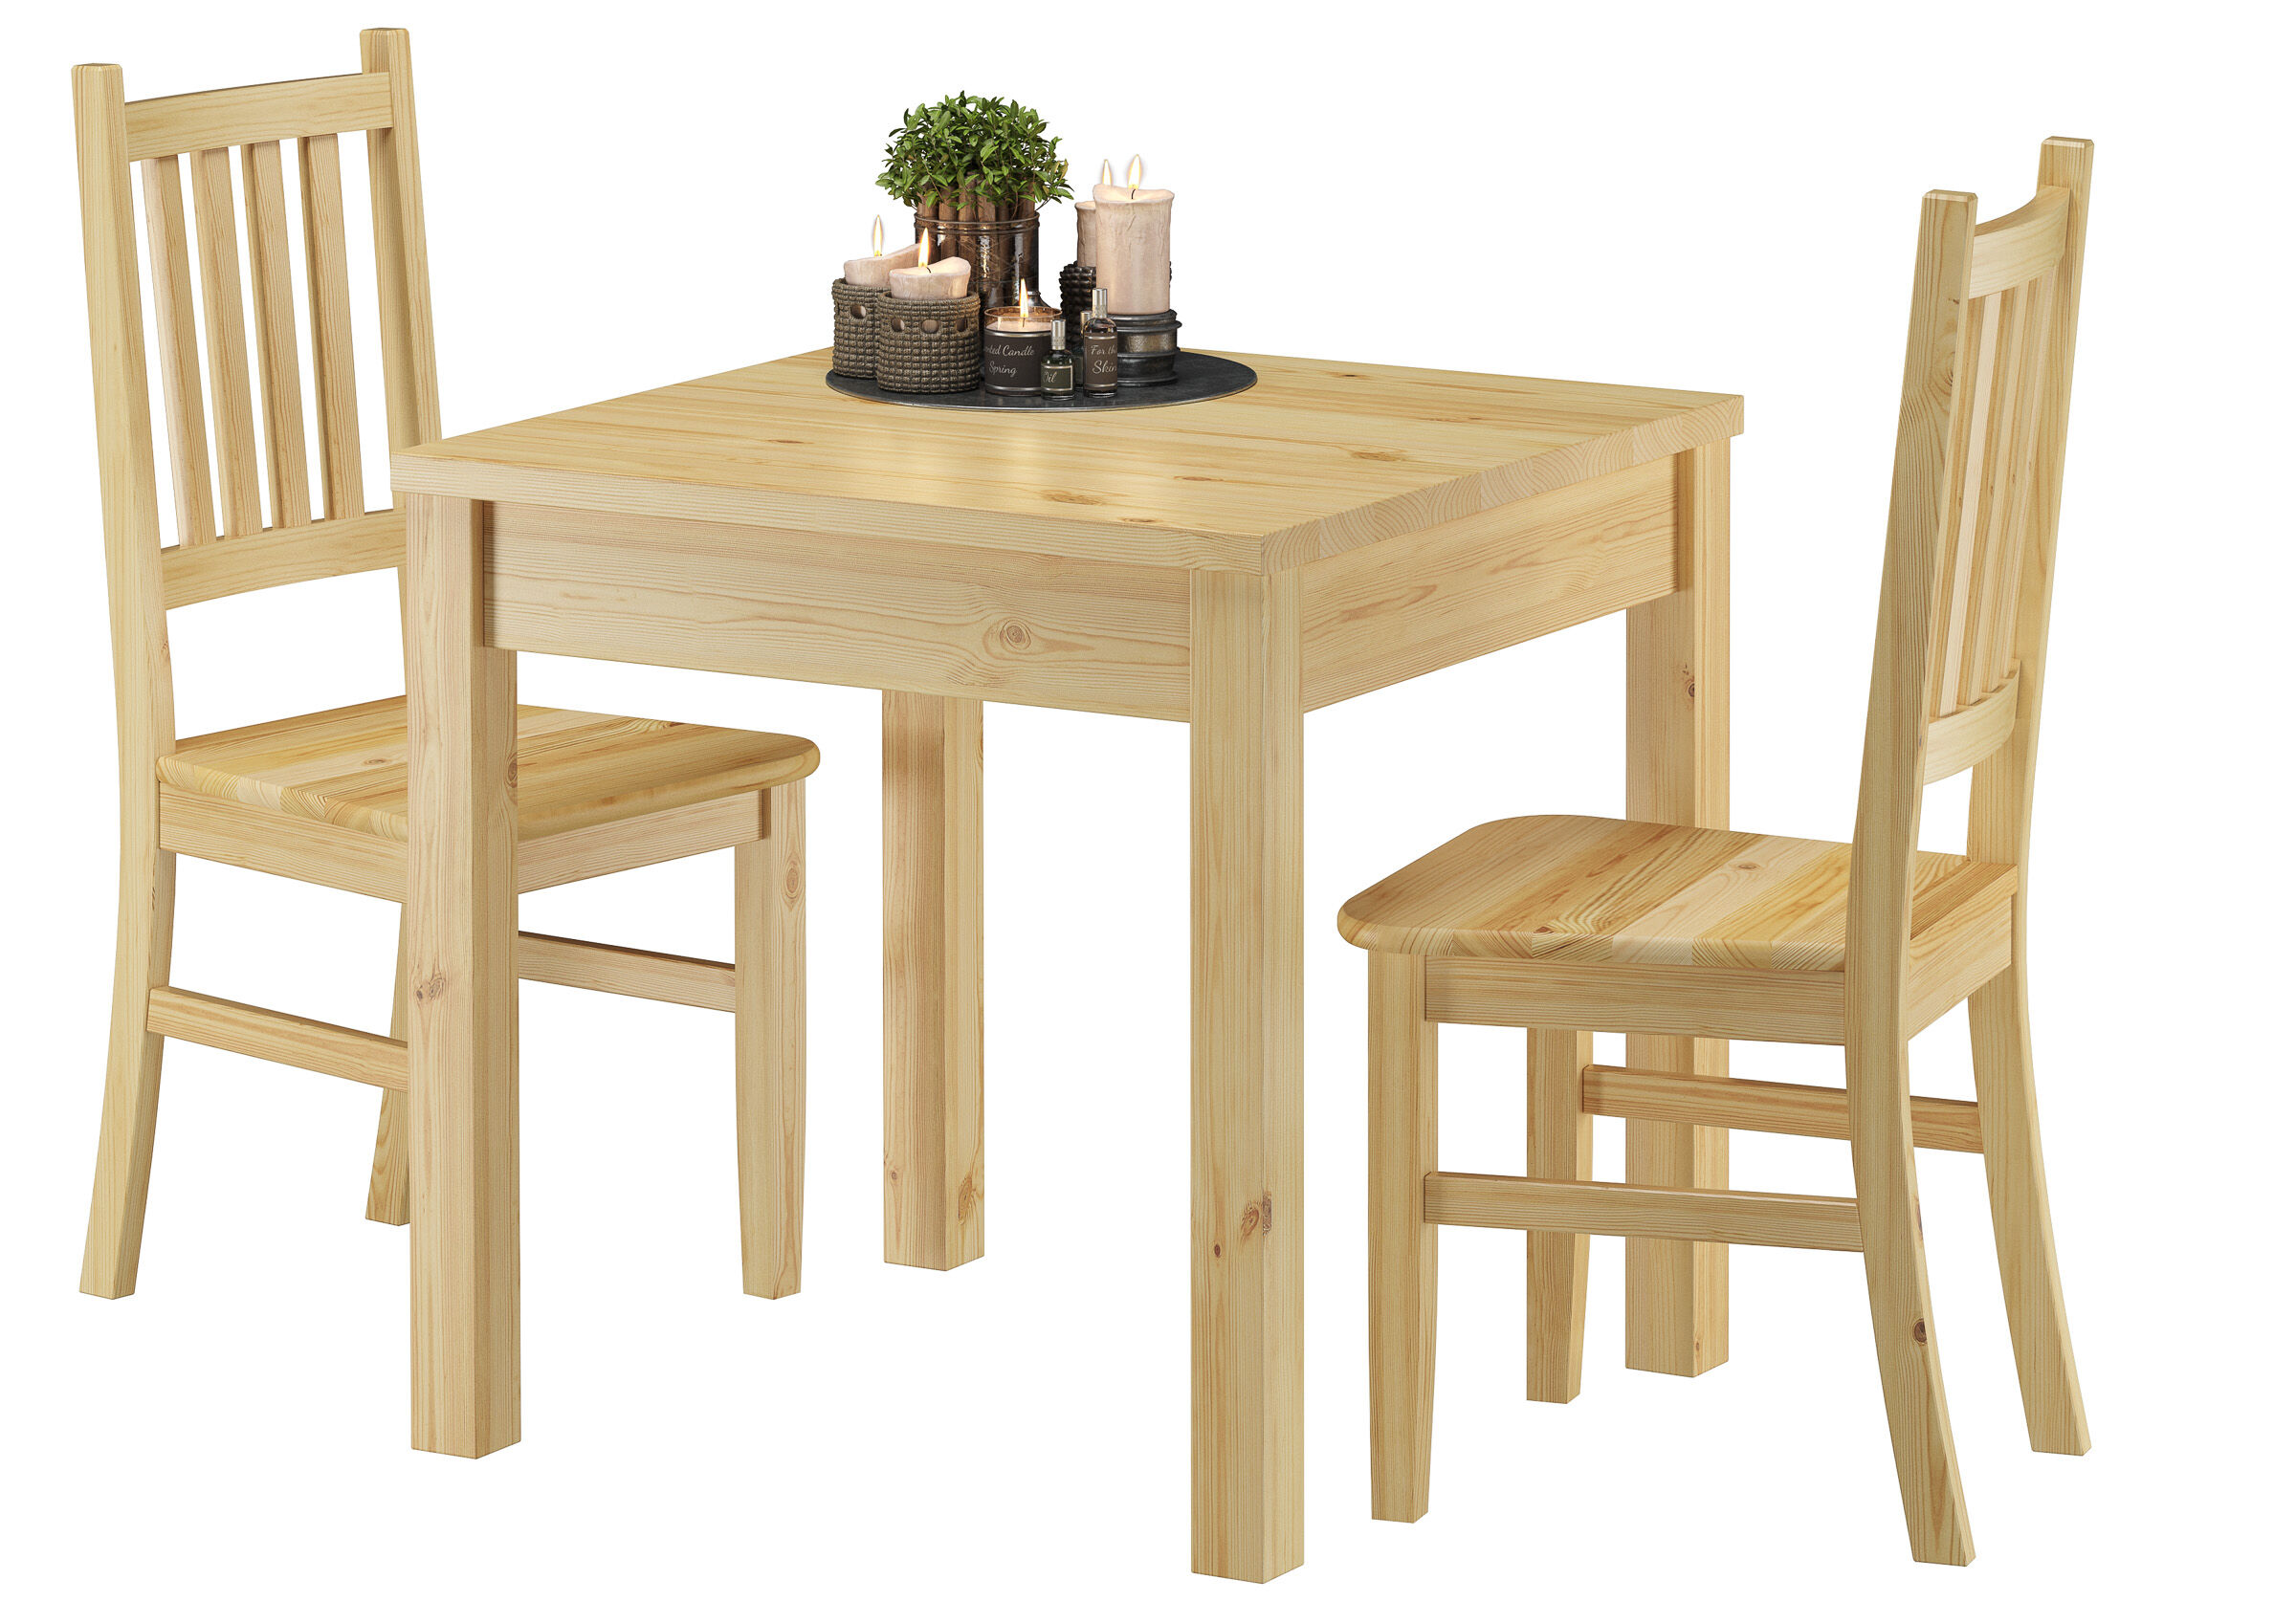 Classico design per sedia in Pino per cucina e sala da pranzo studio 90.71-01